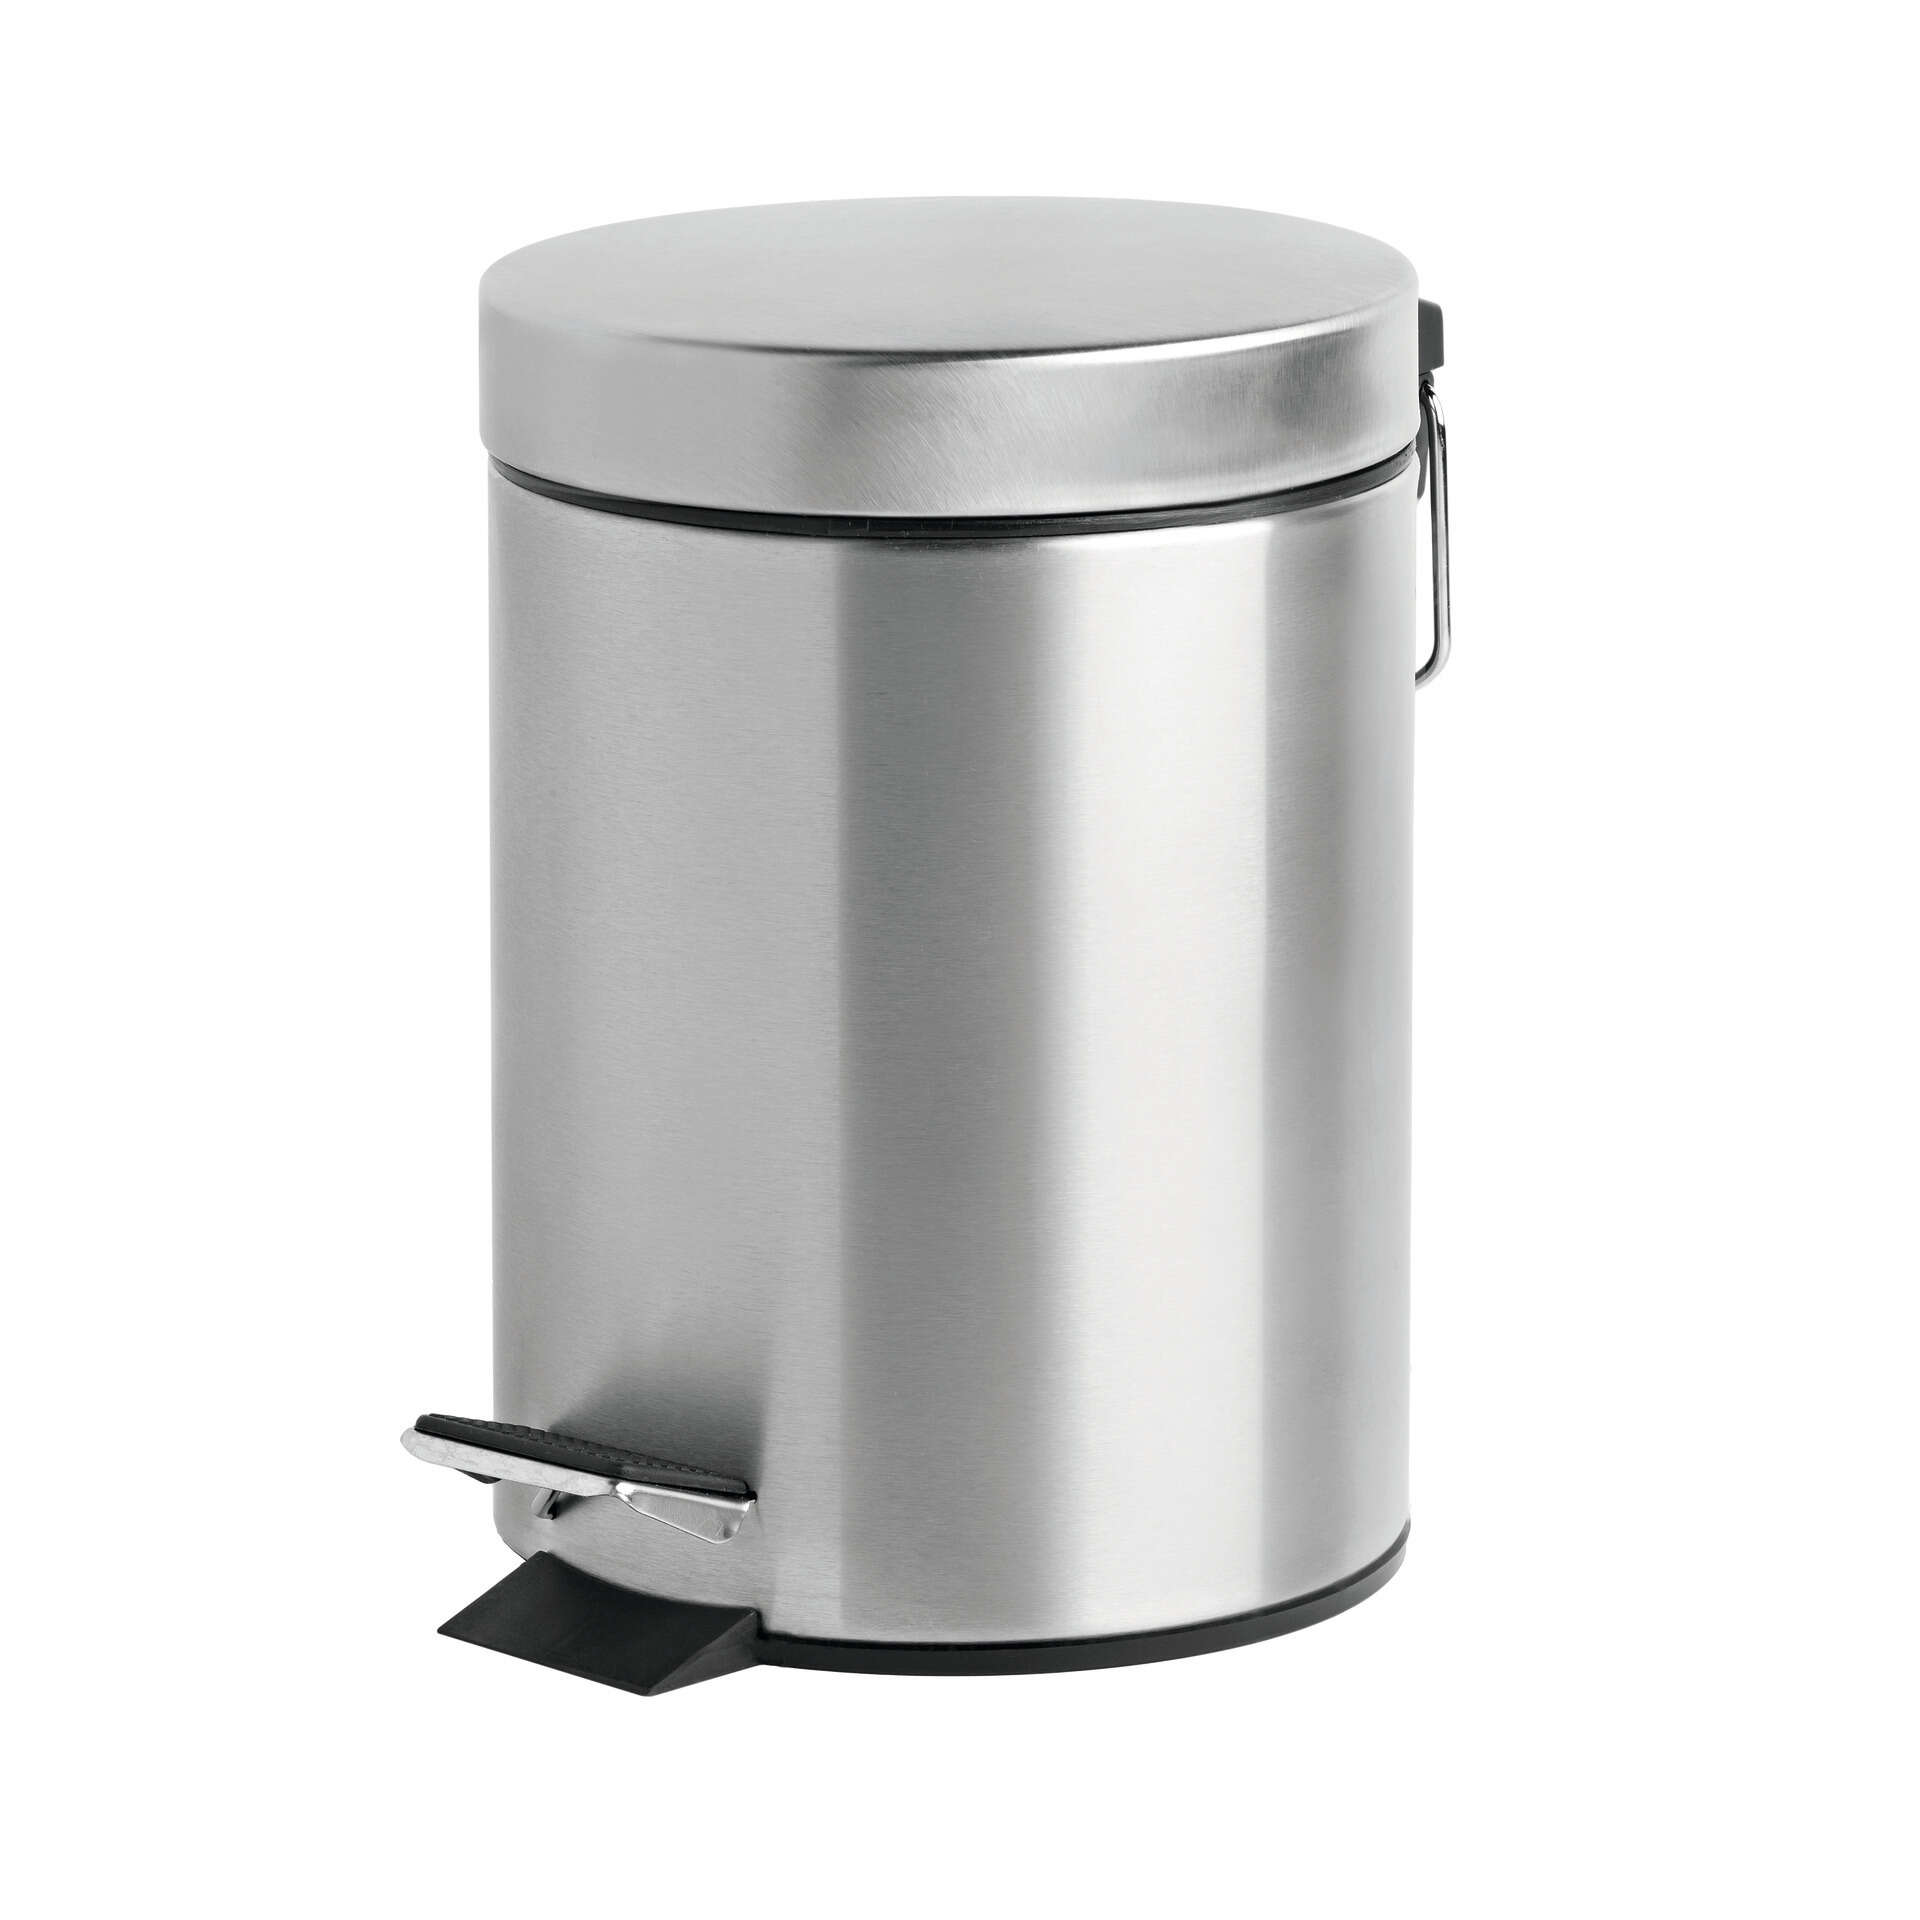 WC.6418 Série 6400 - Balde para o lixo - 3 litros - Inox – handlie